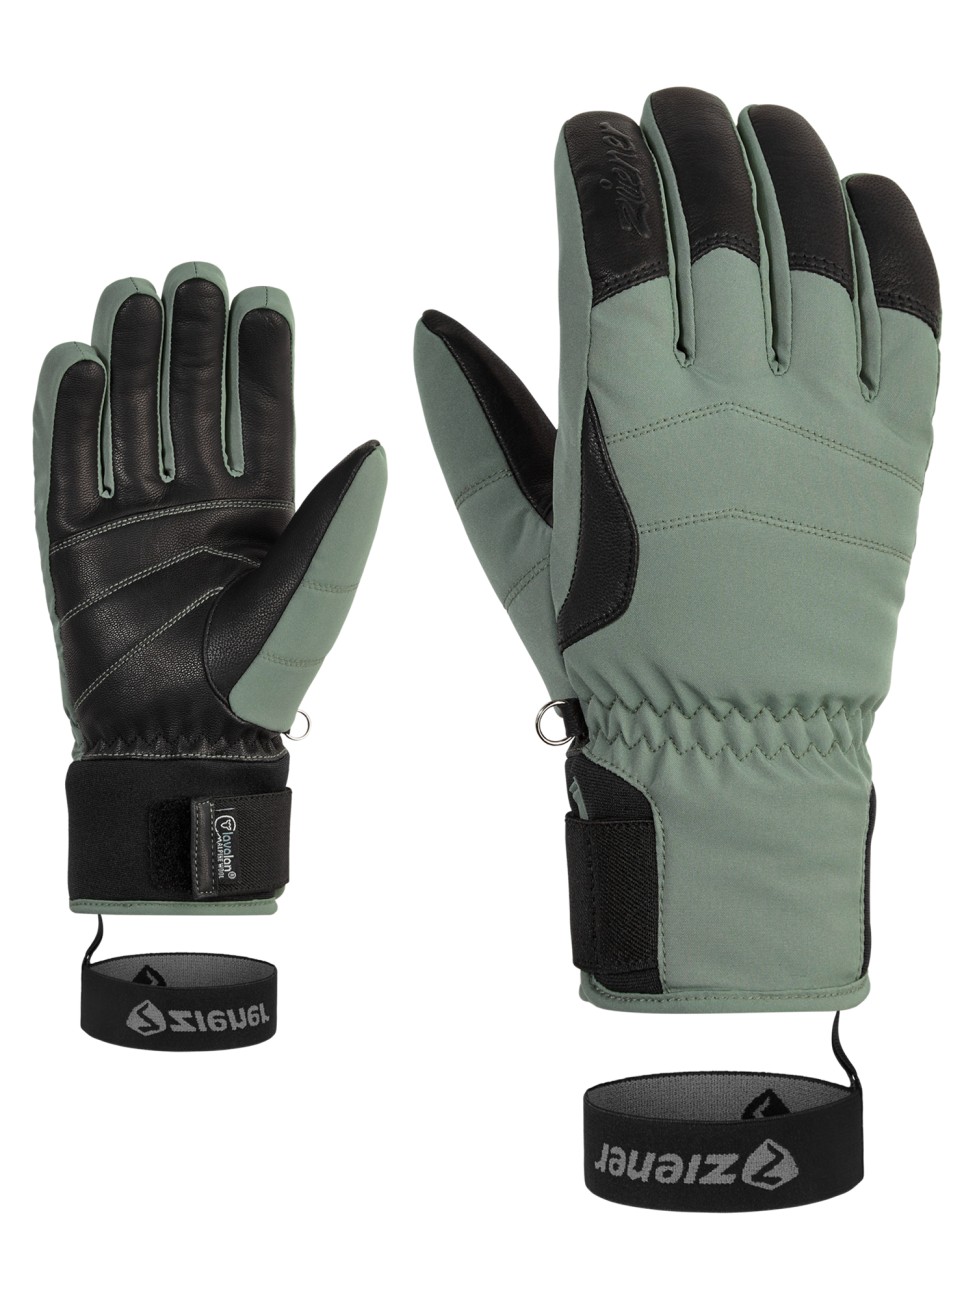 840 online AS(R) green AW glove ZIENER kaufen lady KALE mud